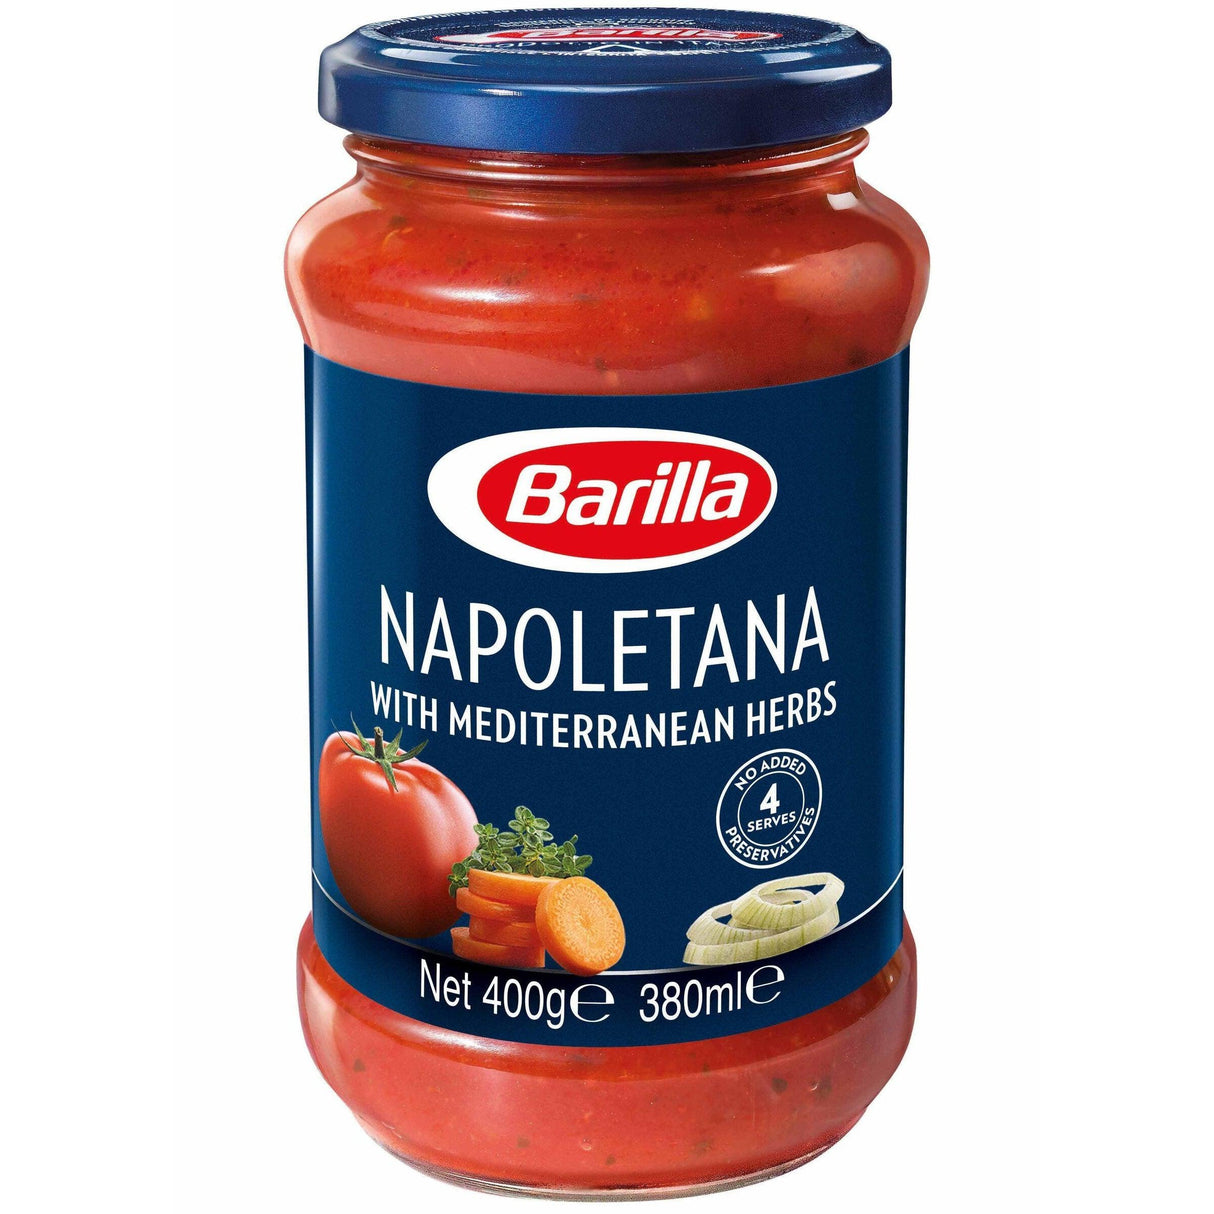 Barilla Napoletana With Mediterranean Herbs Pasta Sauce 400g